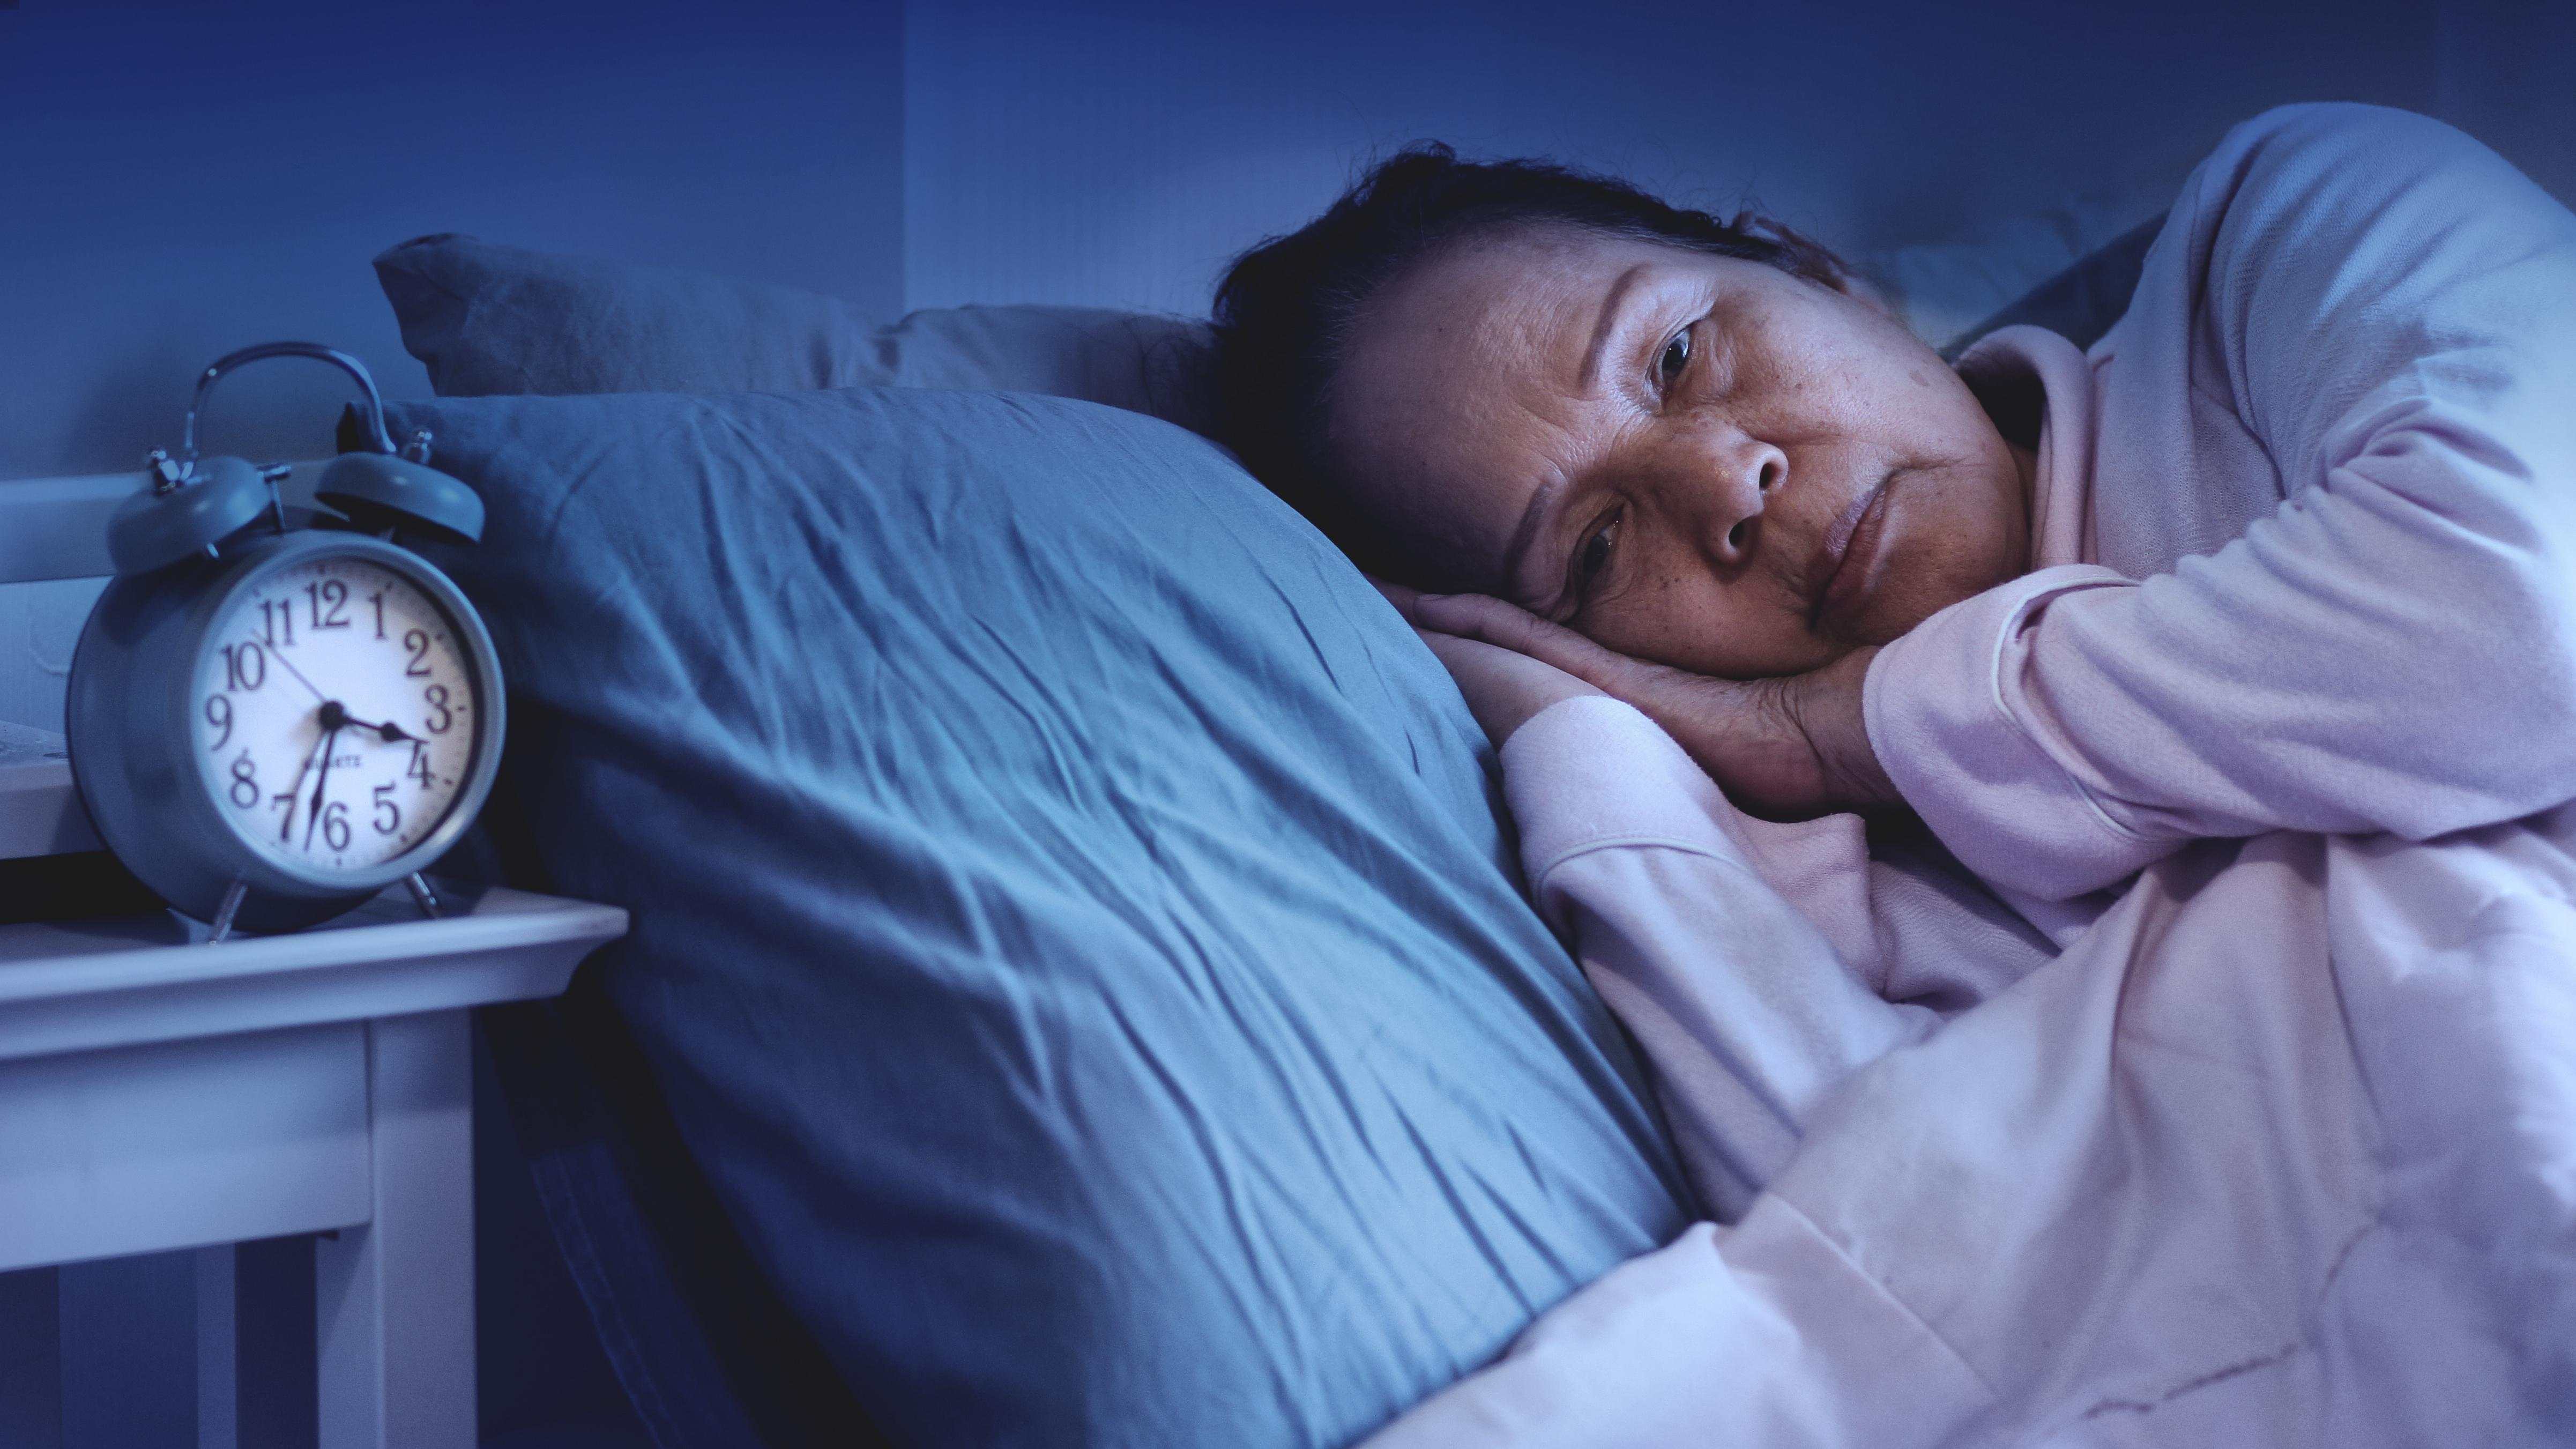 Tidur terfragmentasi dapat memicu timbulnya migrain